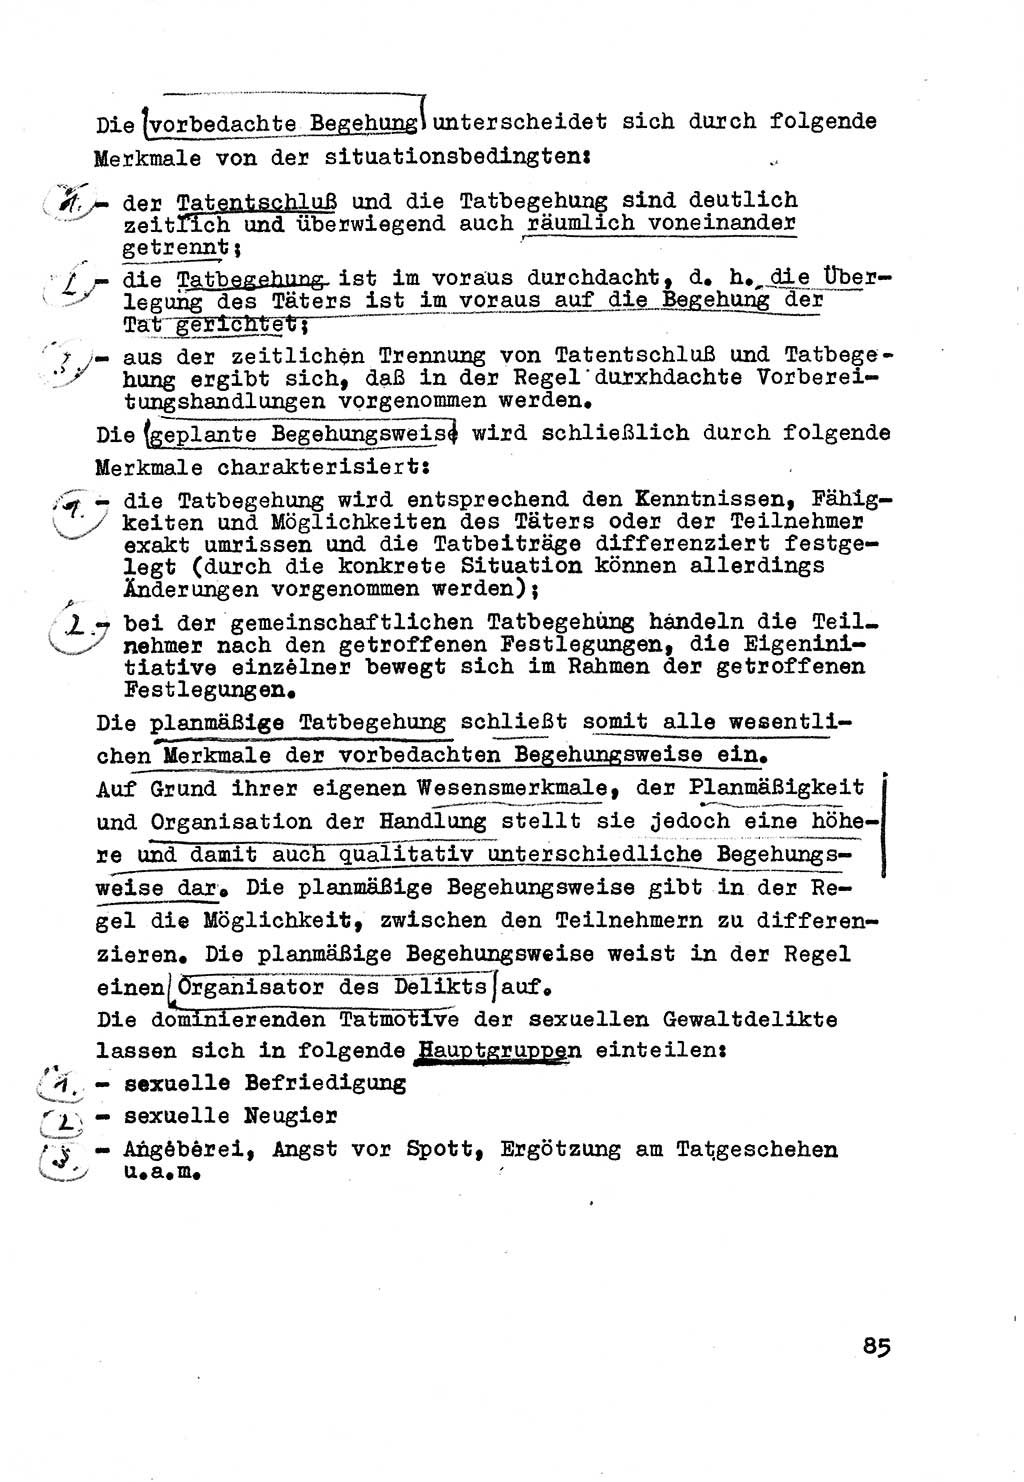 Strafrecht der DDR (Deutsche Demokratische Republik), Besonderer Teil, Lehrmaterial, Heft 3 1969, Seite 85 (Strafr. DDR BT Lehrmat. H. 3 1969, S. 85)